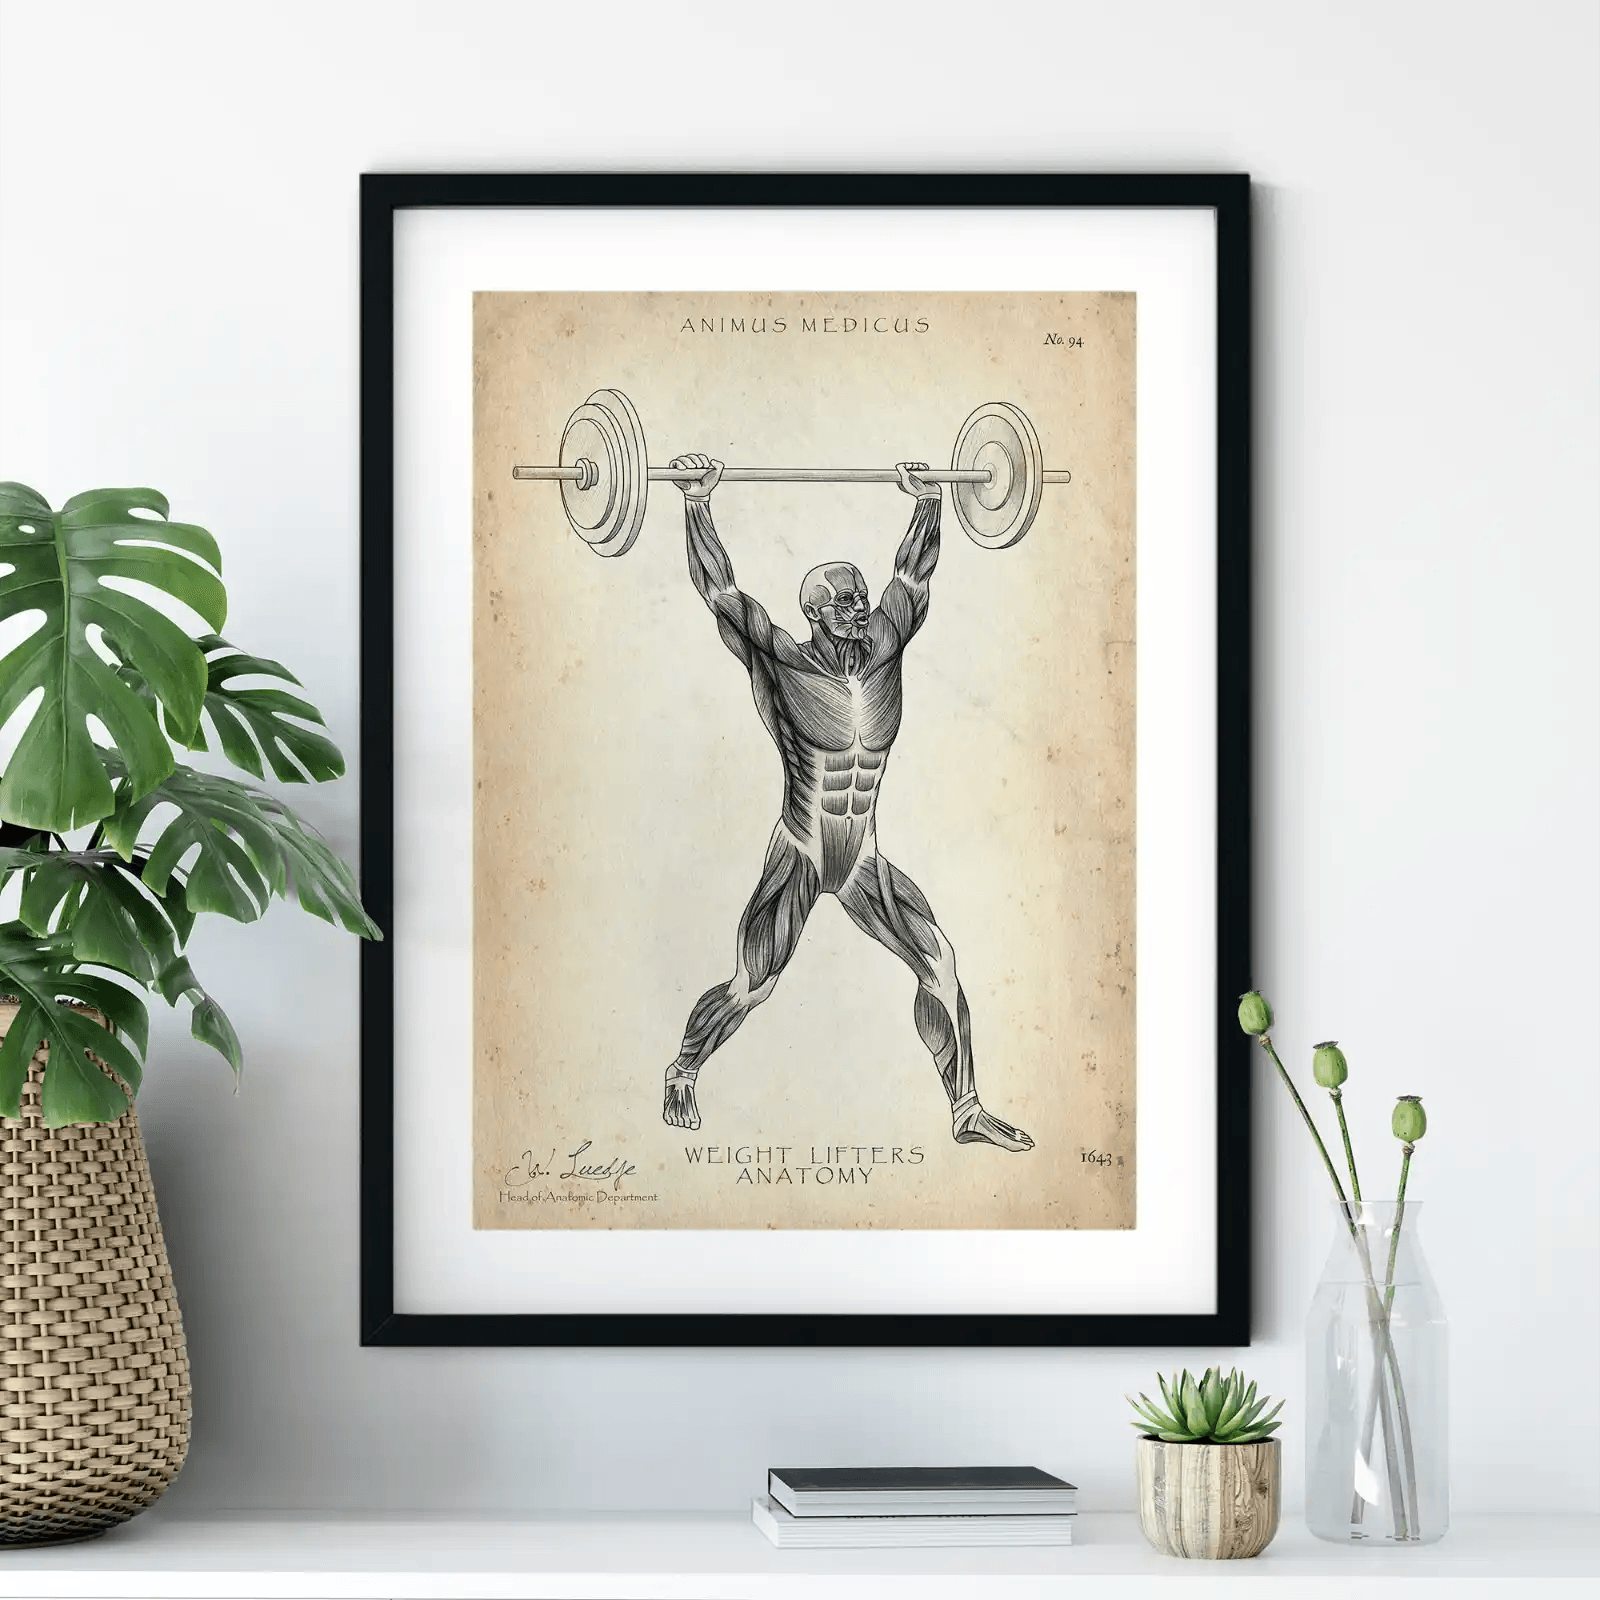 Gewichtheben Anatomie Poster - Animus Medicus GmbH